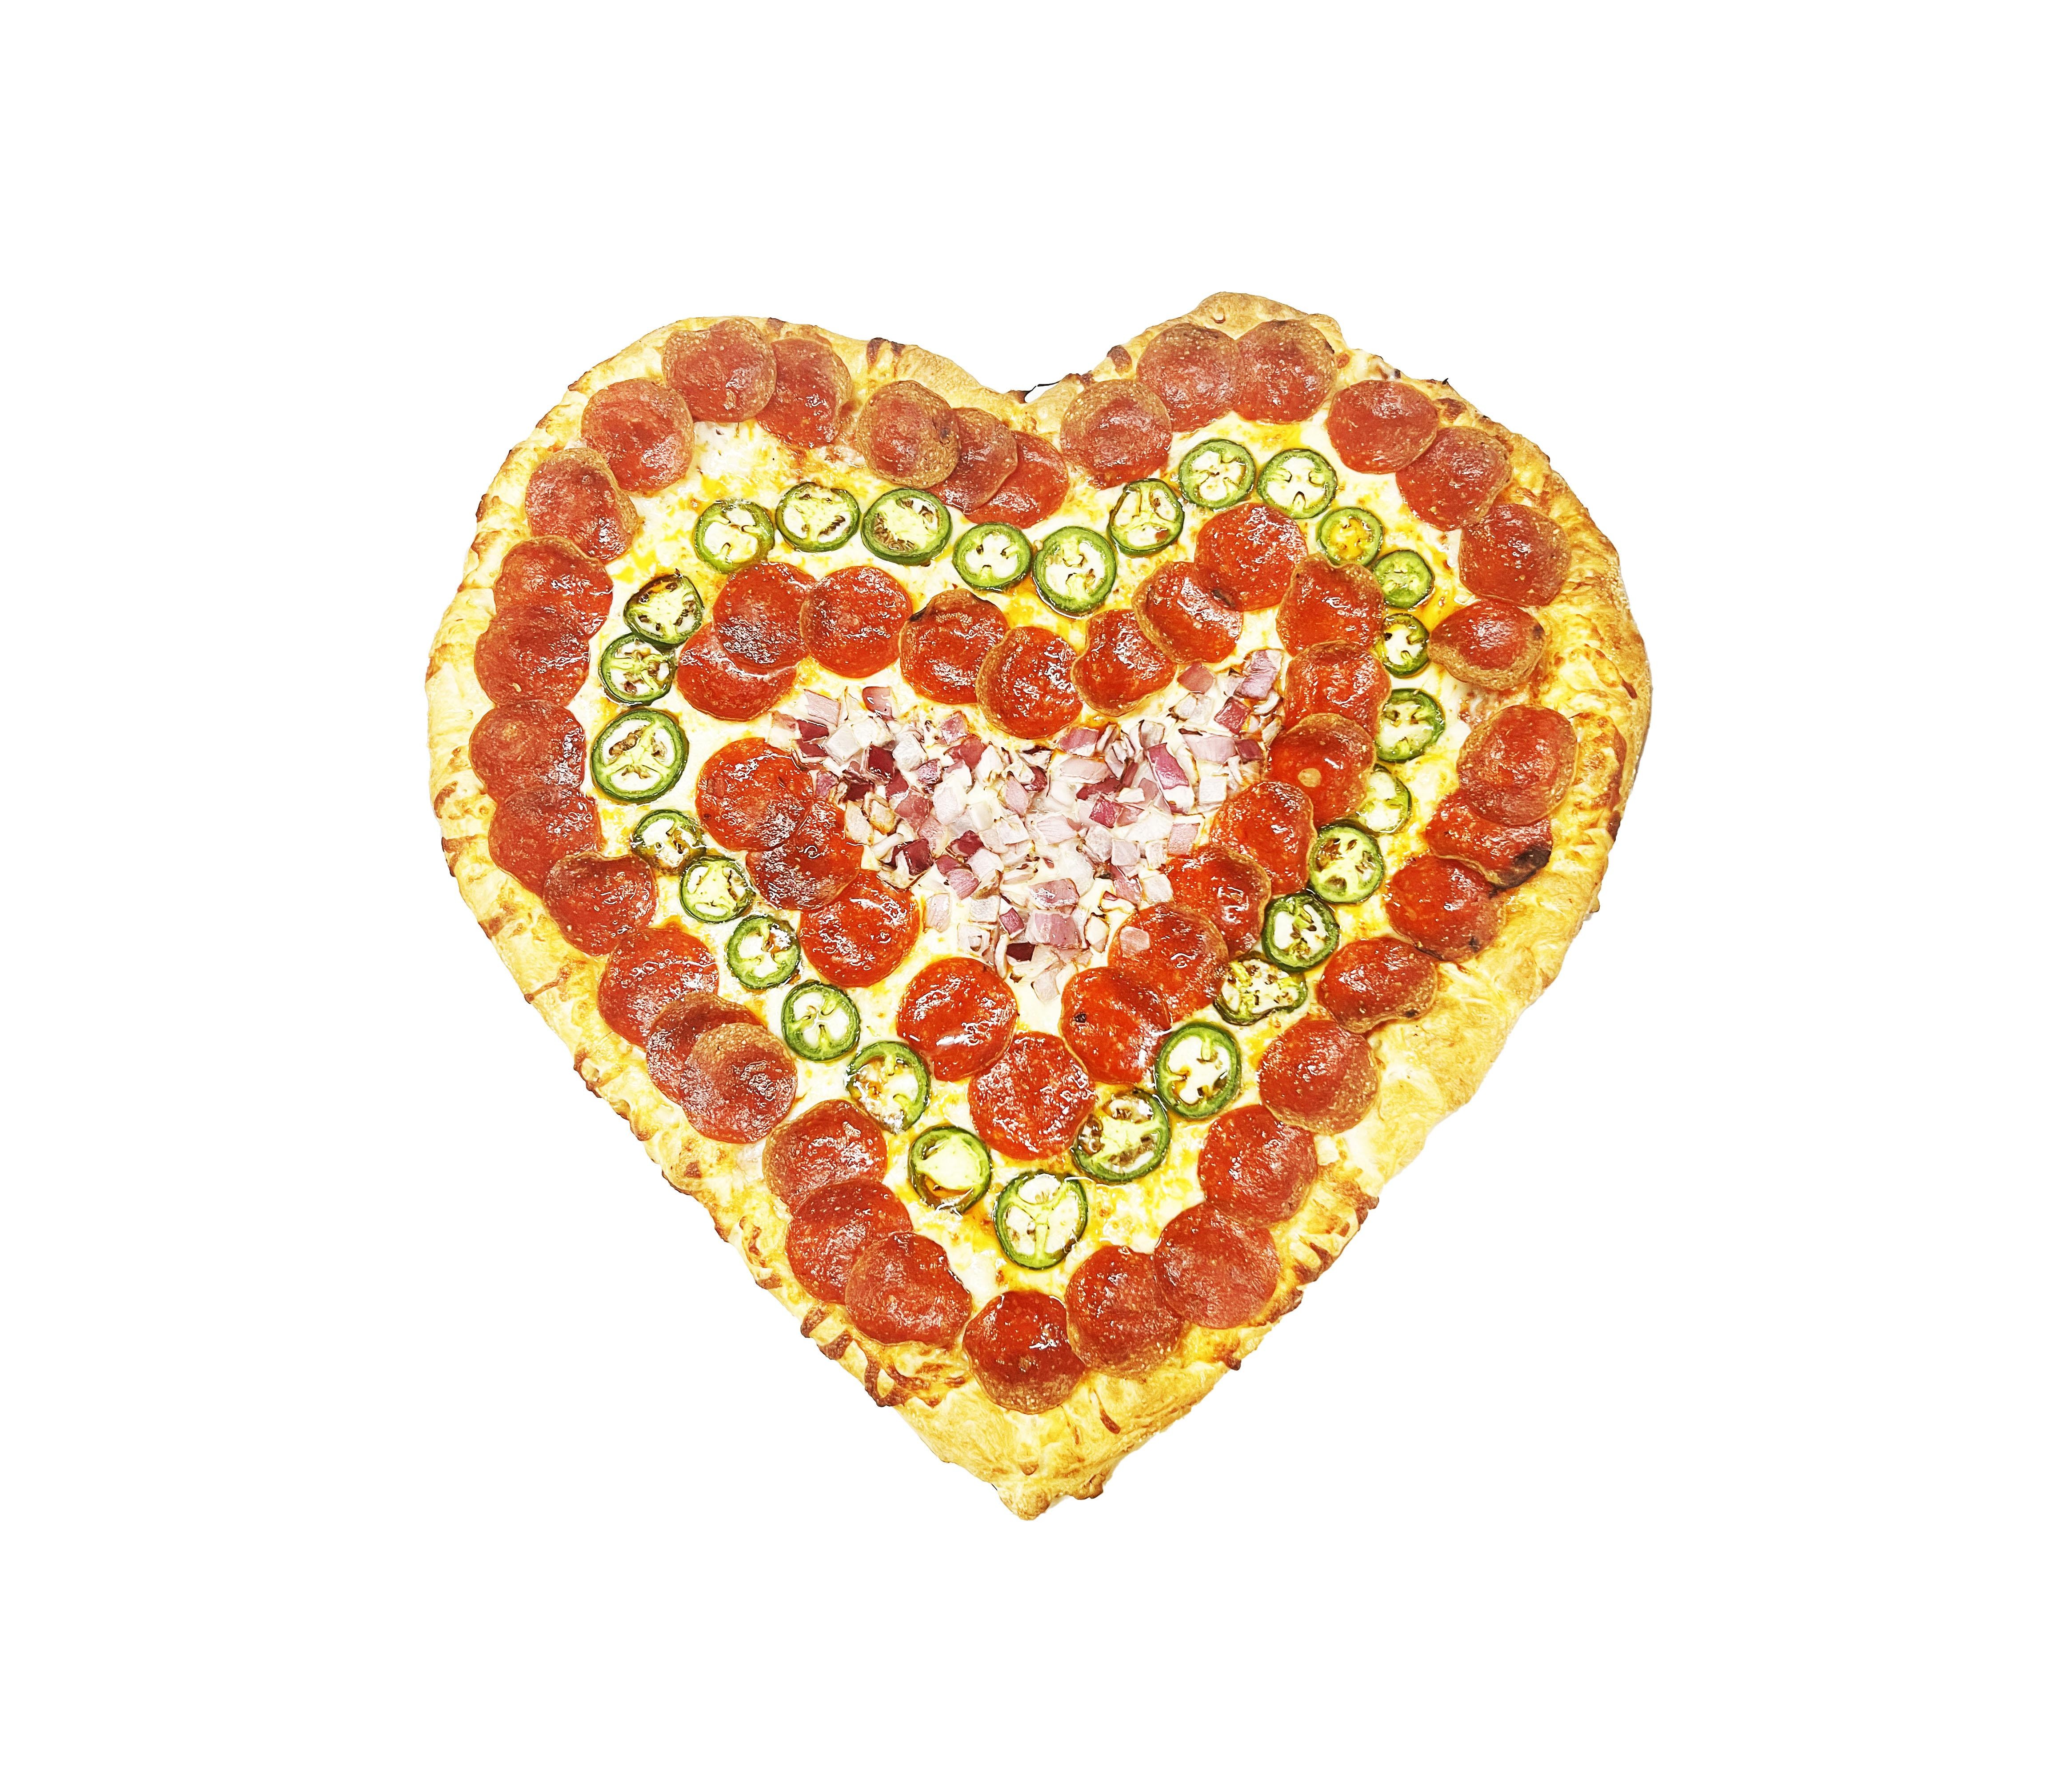 16” BYO HEART SHAPED PIZZA